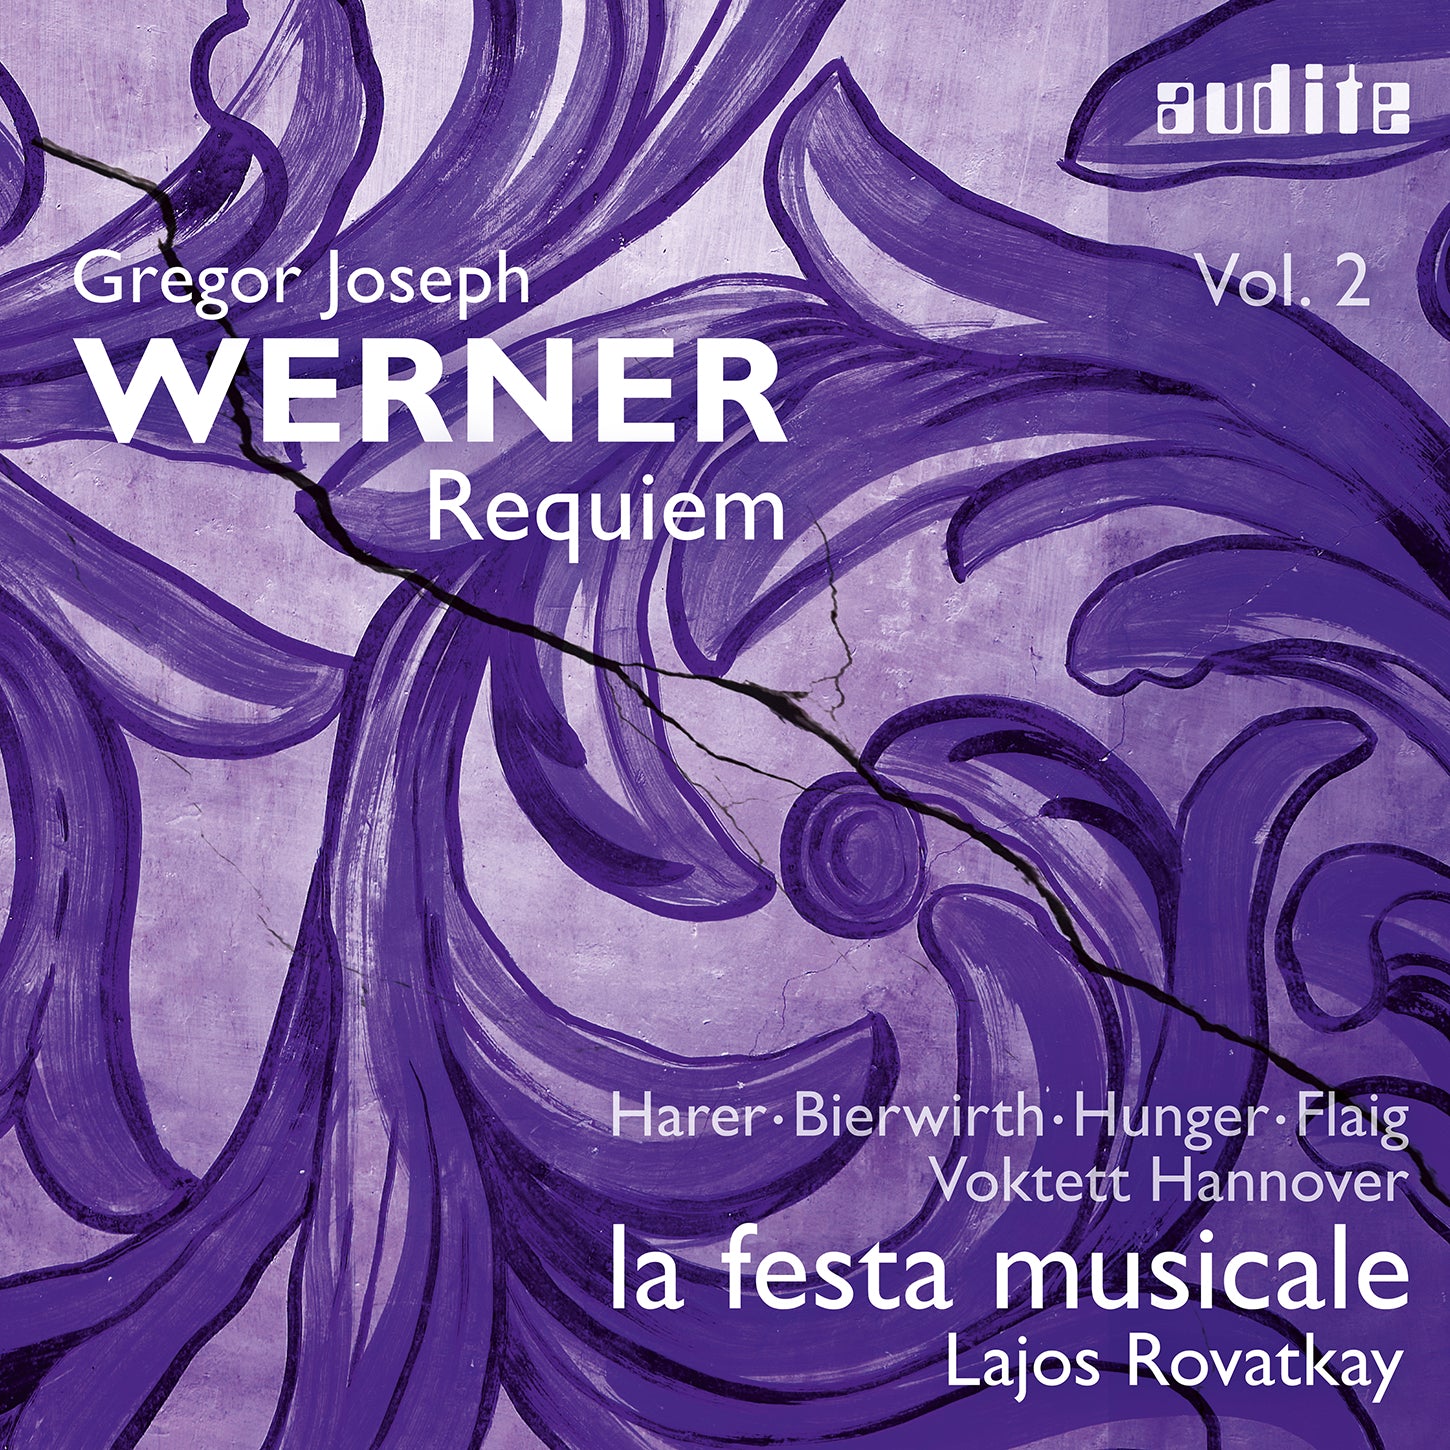 Gregor Joseph Werner, Vol. 2 - Requiem